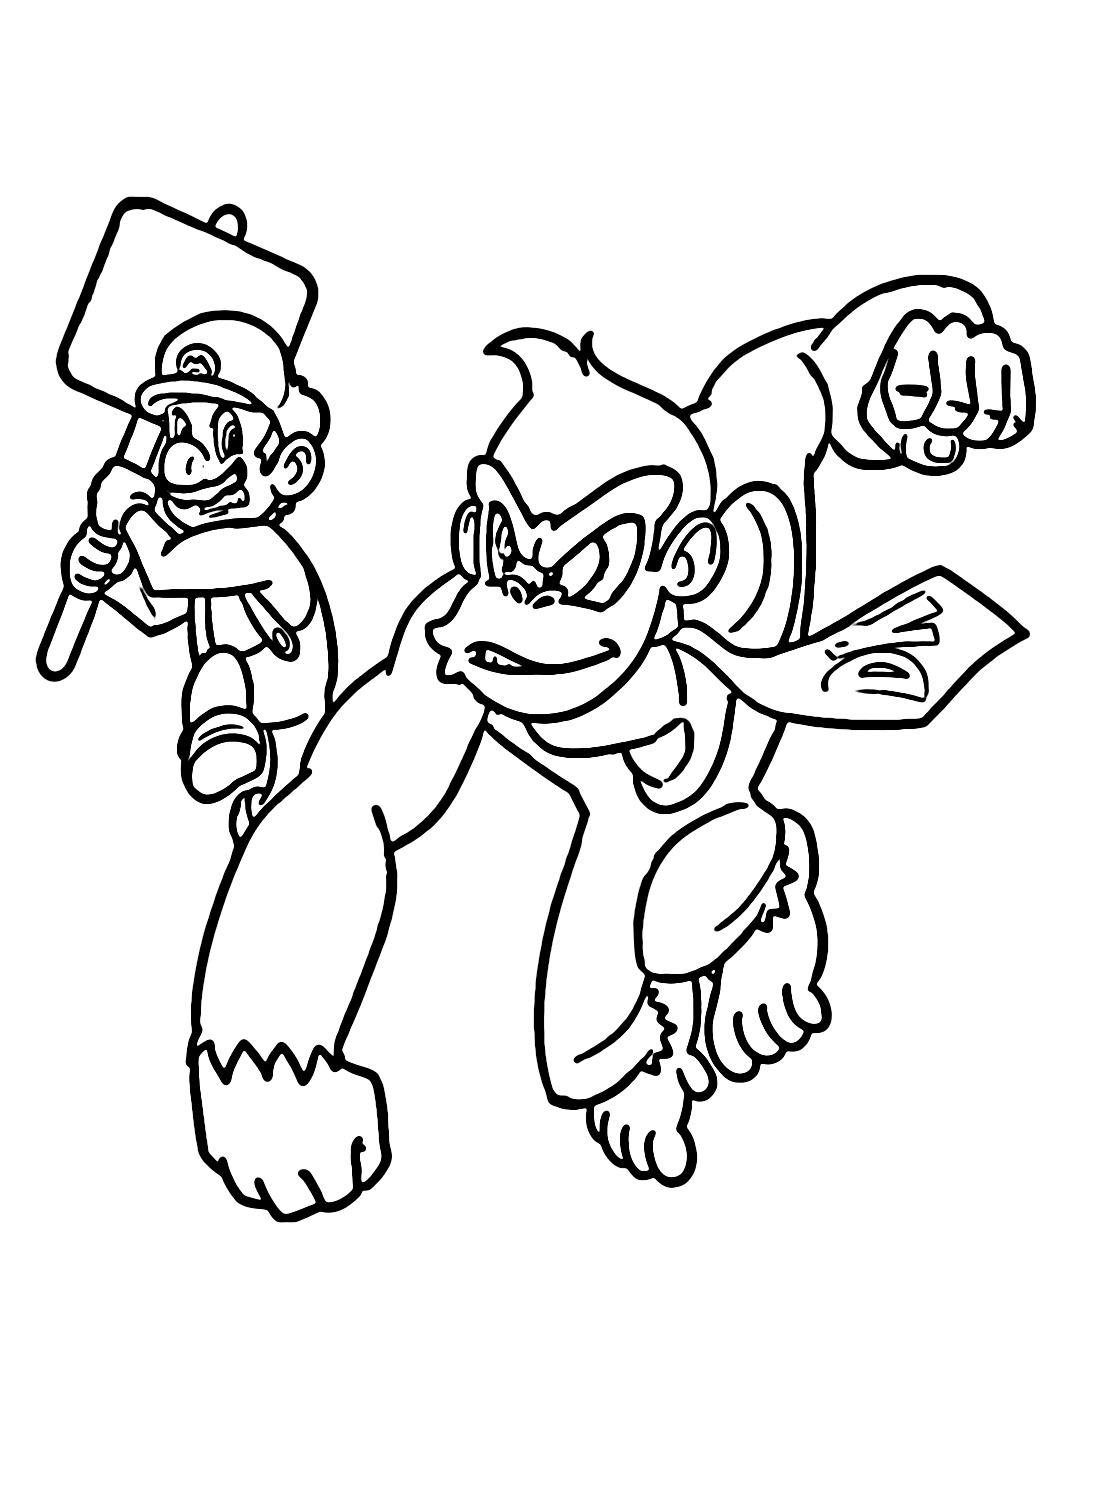 Марио против Донки Конга из Donkey Kong